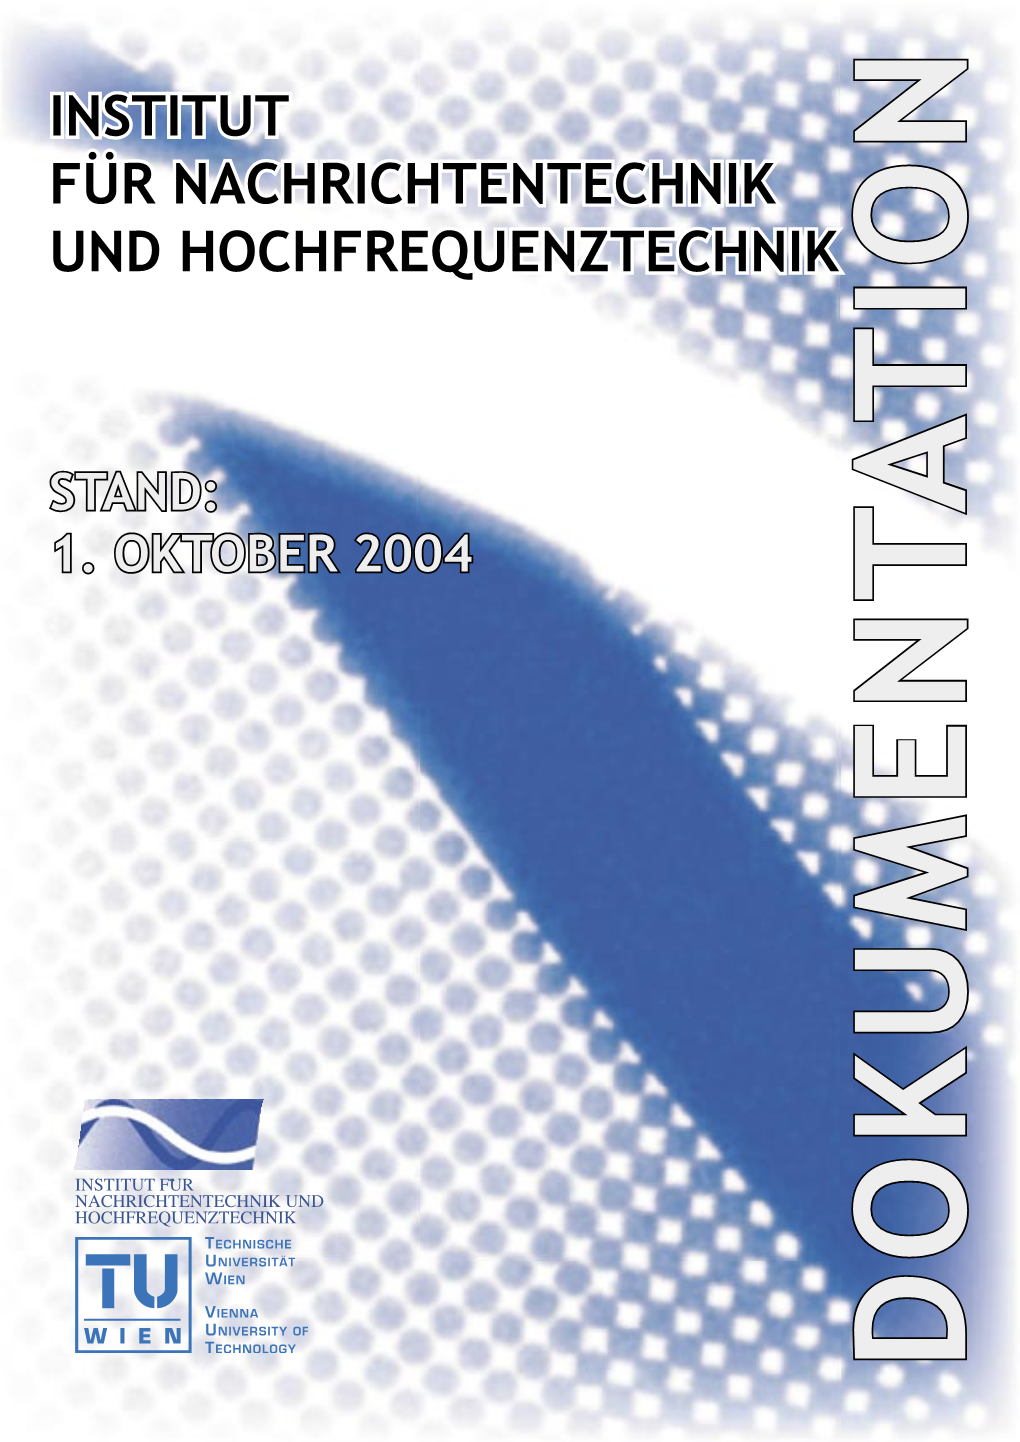 Institut Für Nachrichtentechnik Und Hochfrequenztechnik Gußhausstraße 25/389 A-1040 Wien, Austria Tel.: (+43 1) 588 01-Ext